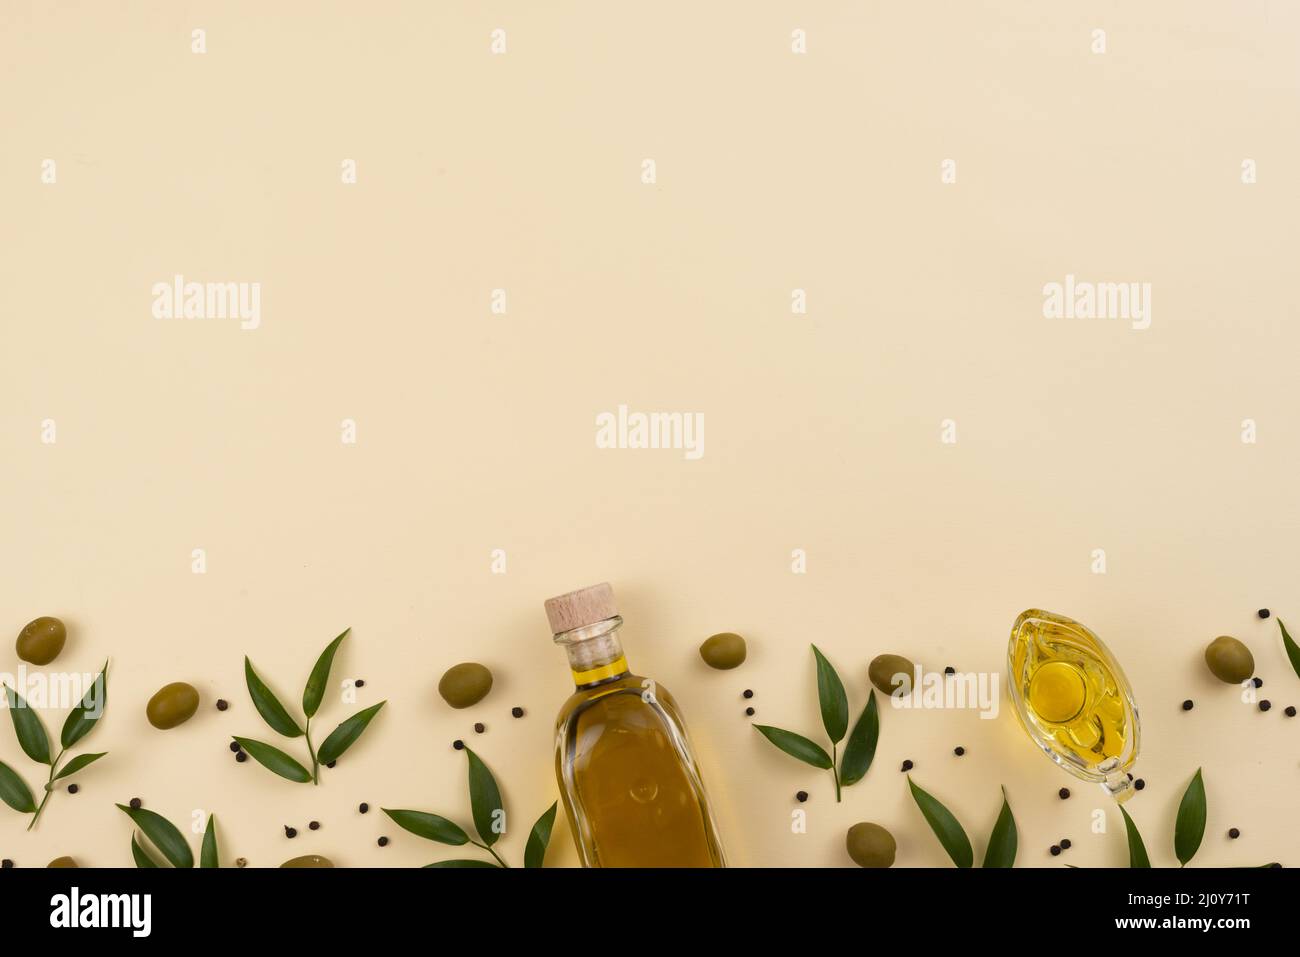 Fond rose huile d'olive. Photo de haute qualité Banque D'Images